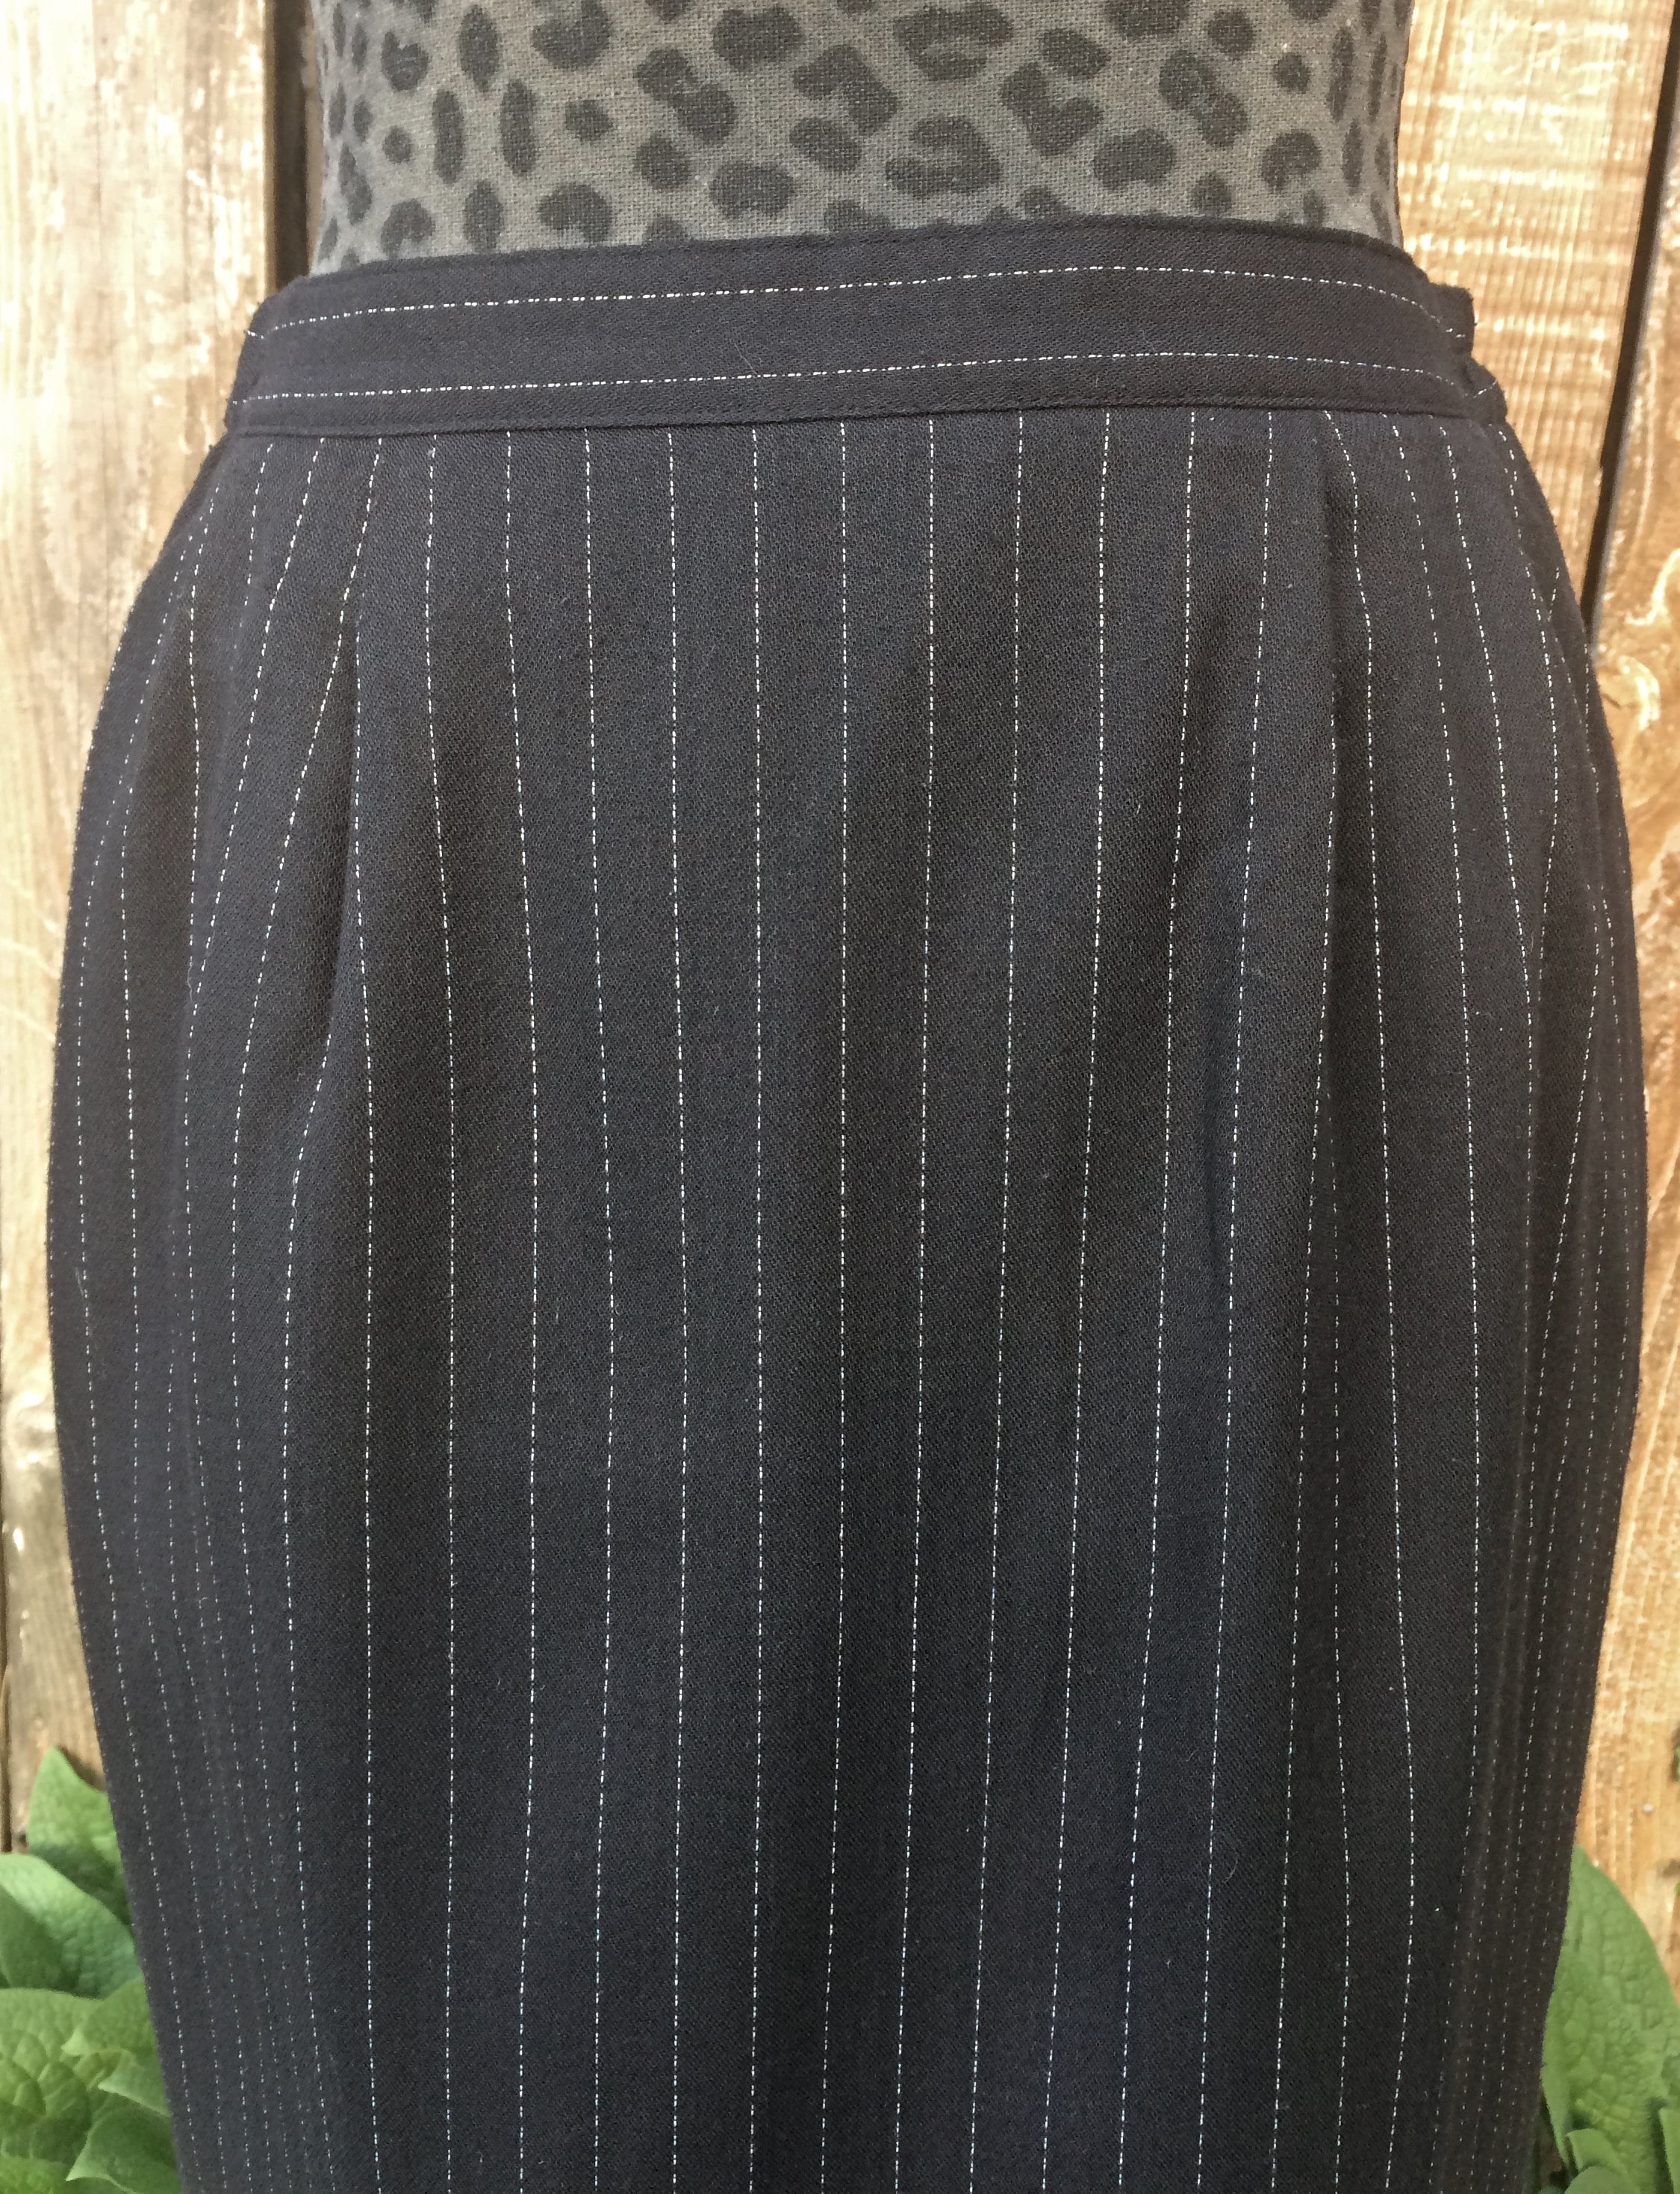 Black Pinstripe Skirt Black and White Pinstripe Skirt Office | Etsy UK